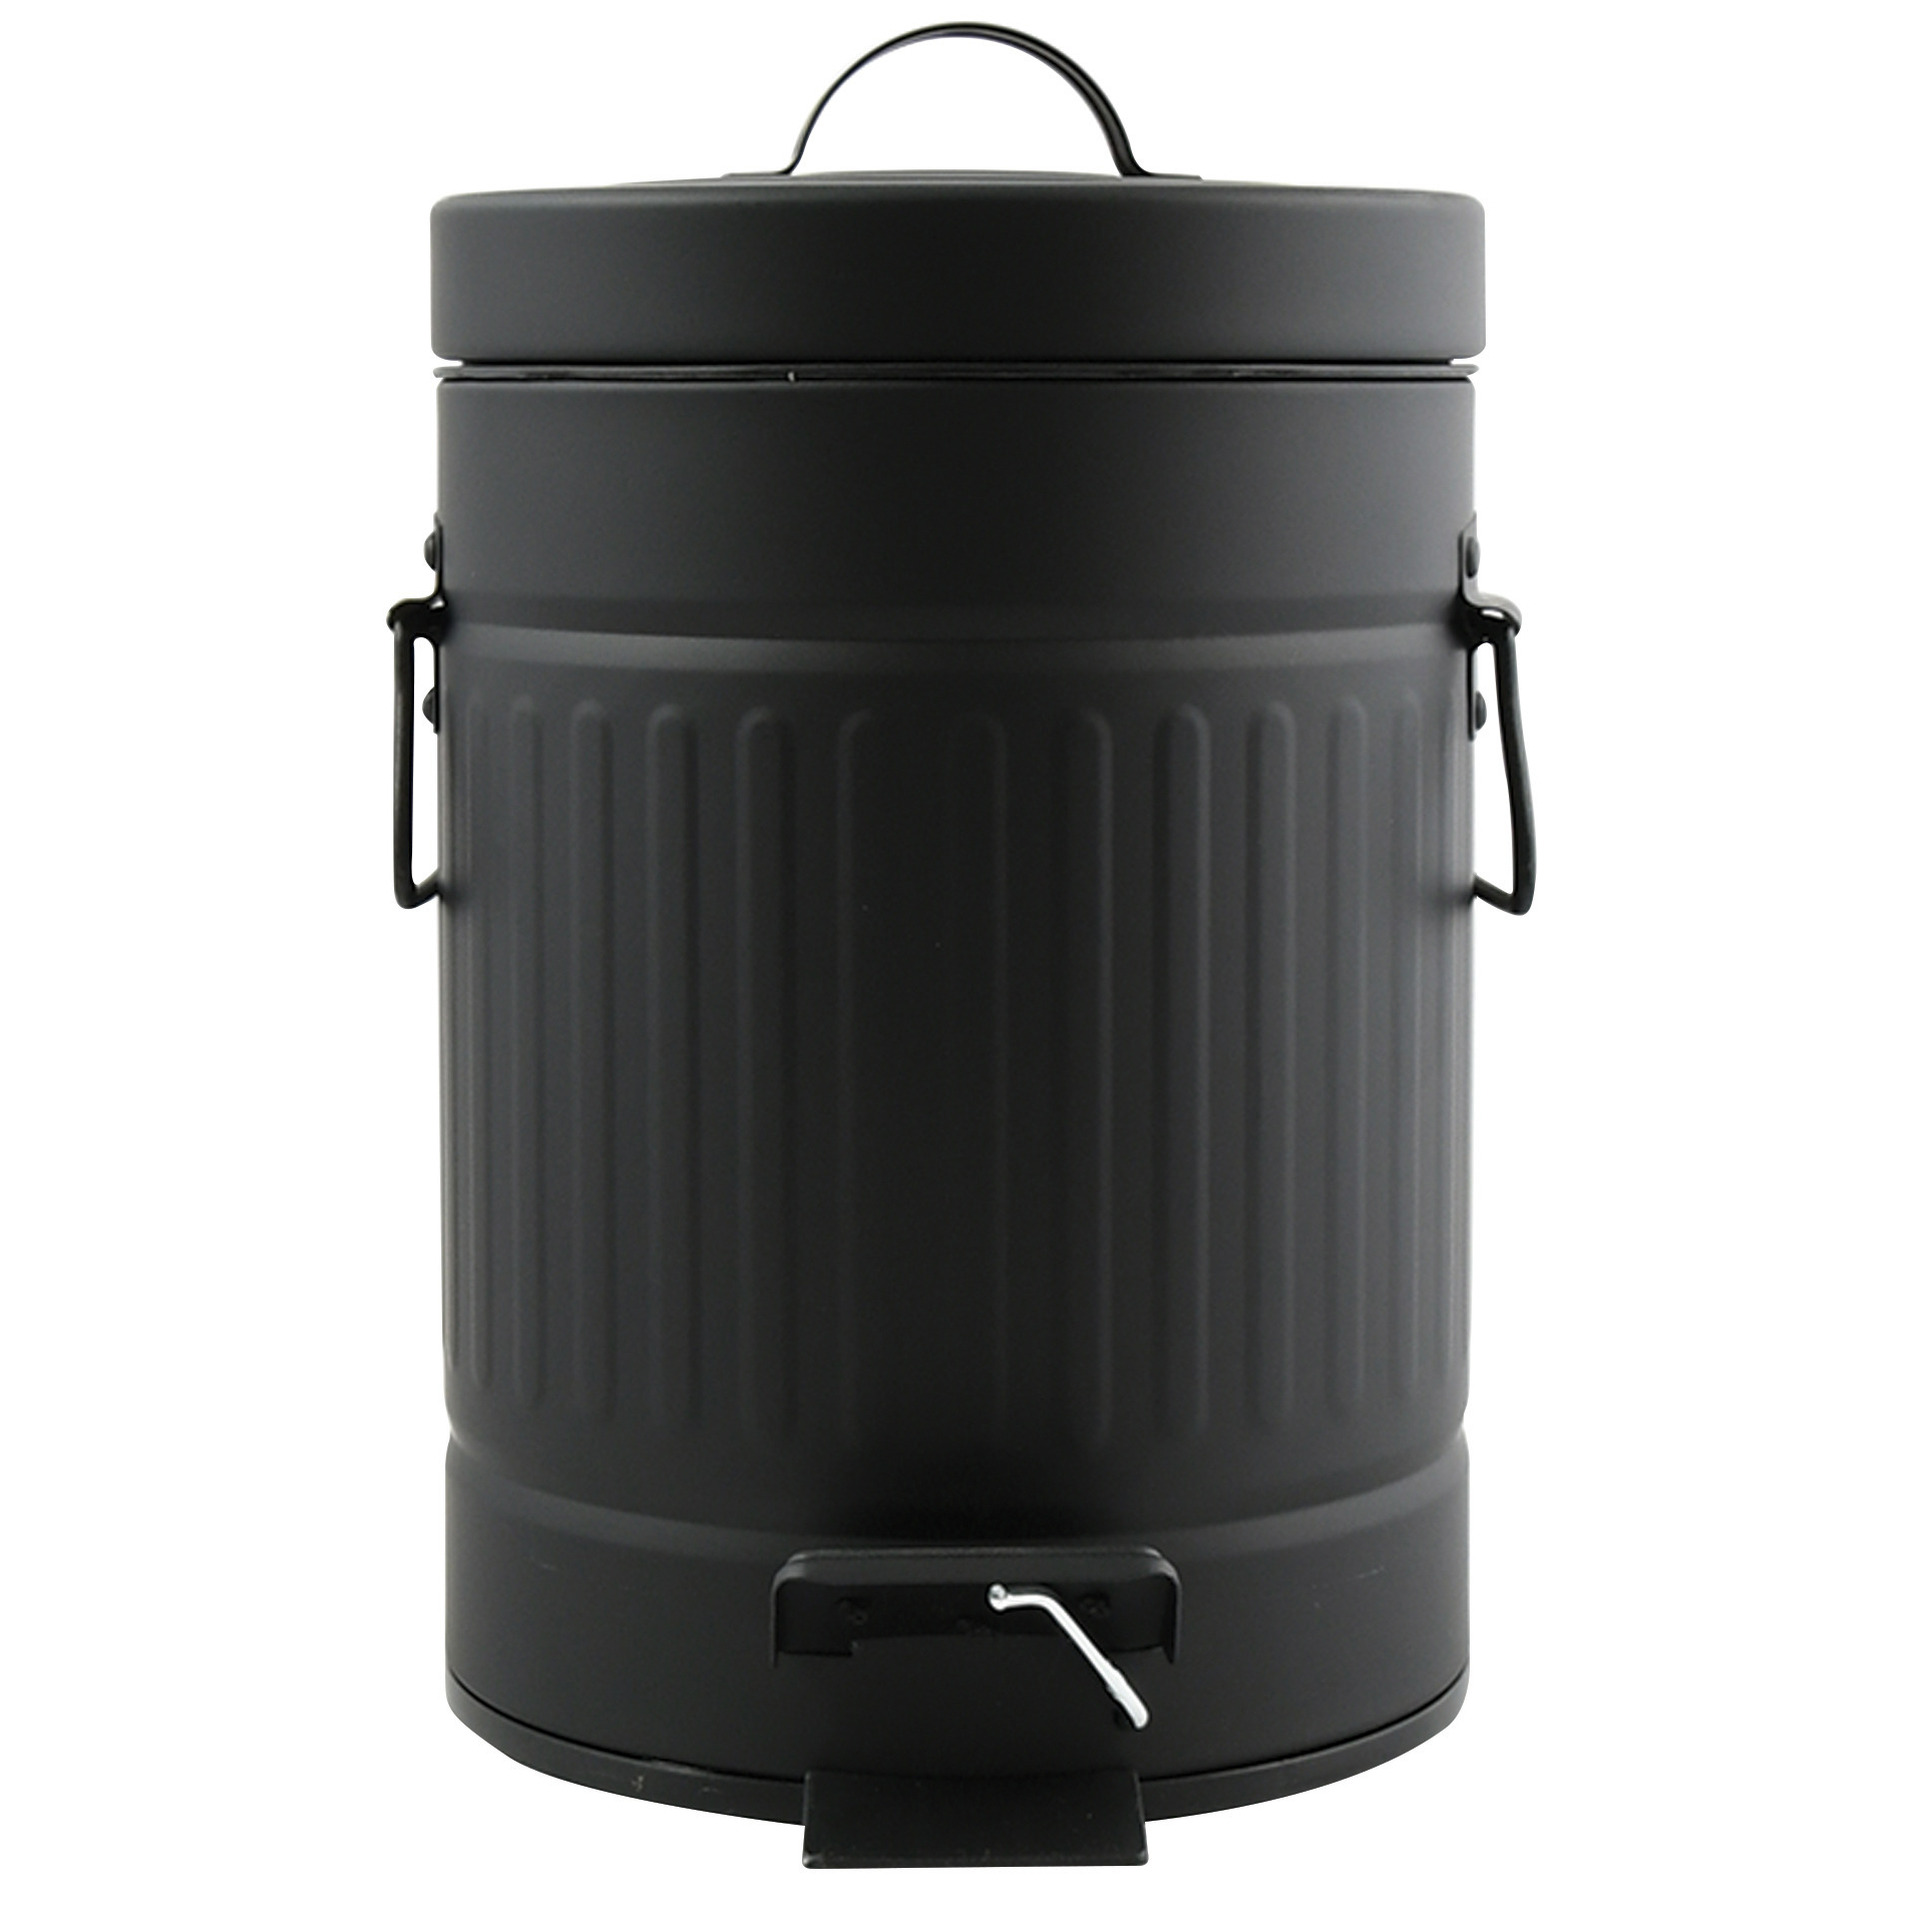 Prullenbak-pedaalemmer Industrial metaal zwart 3 liter 17 x 26 cm Badkamer-toilet